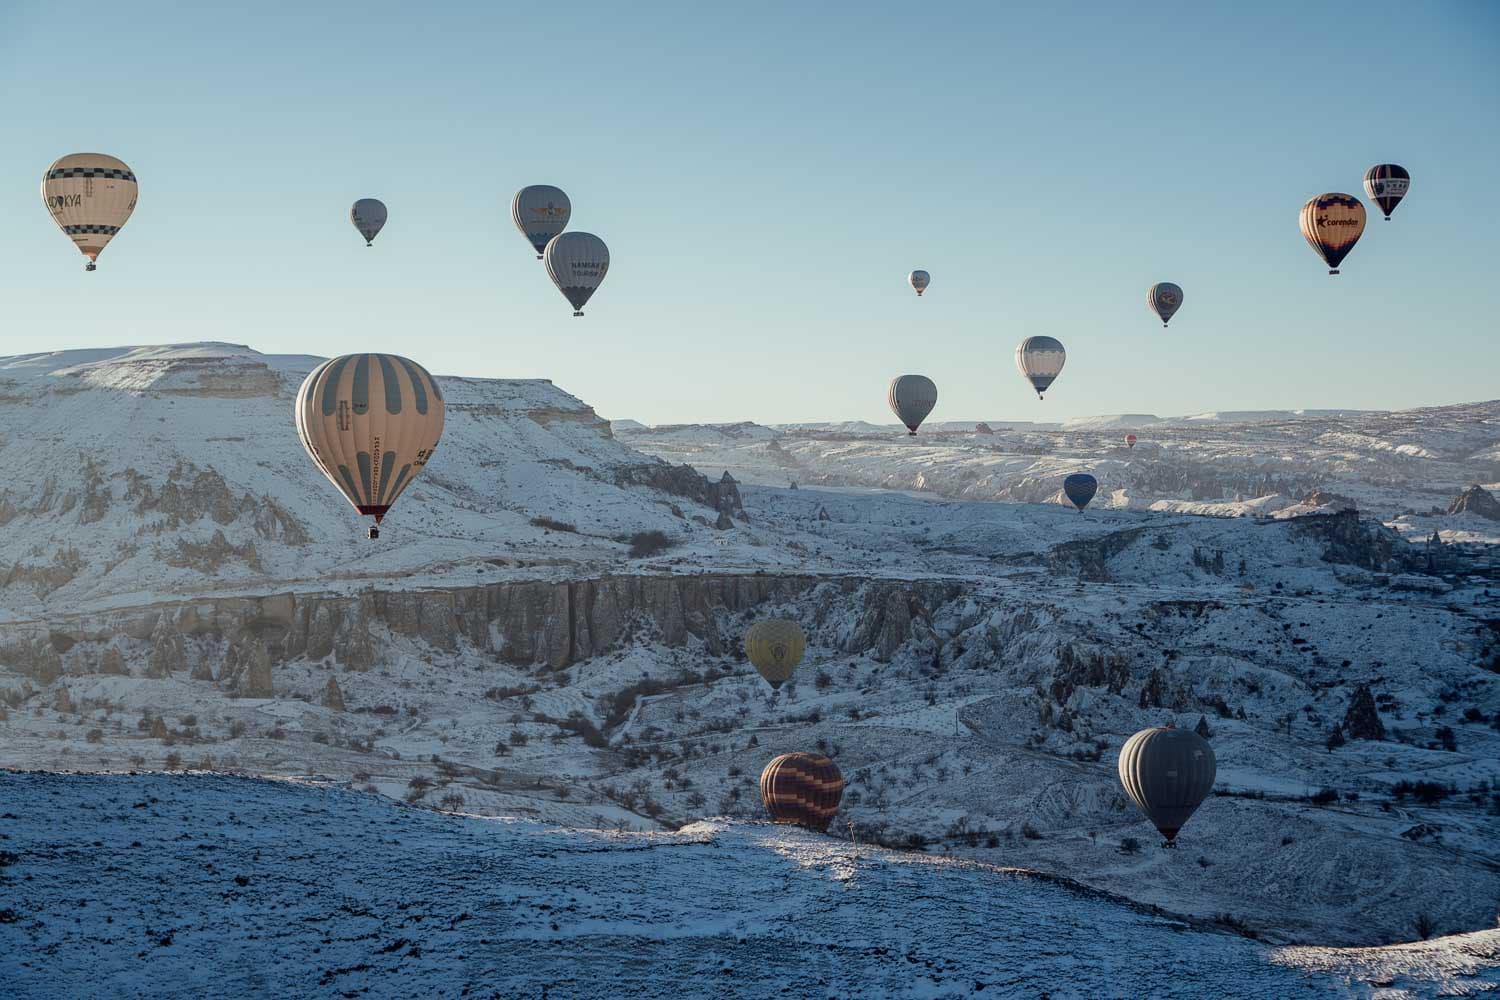 Cappadocia Winter Balloon Rides: A Magical Experience in the Snow